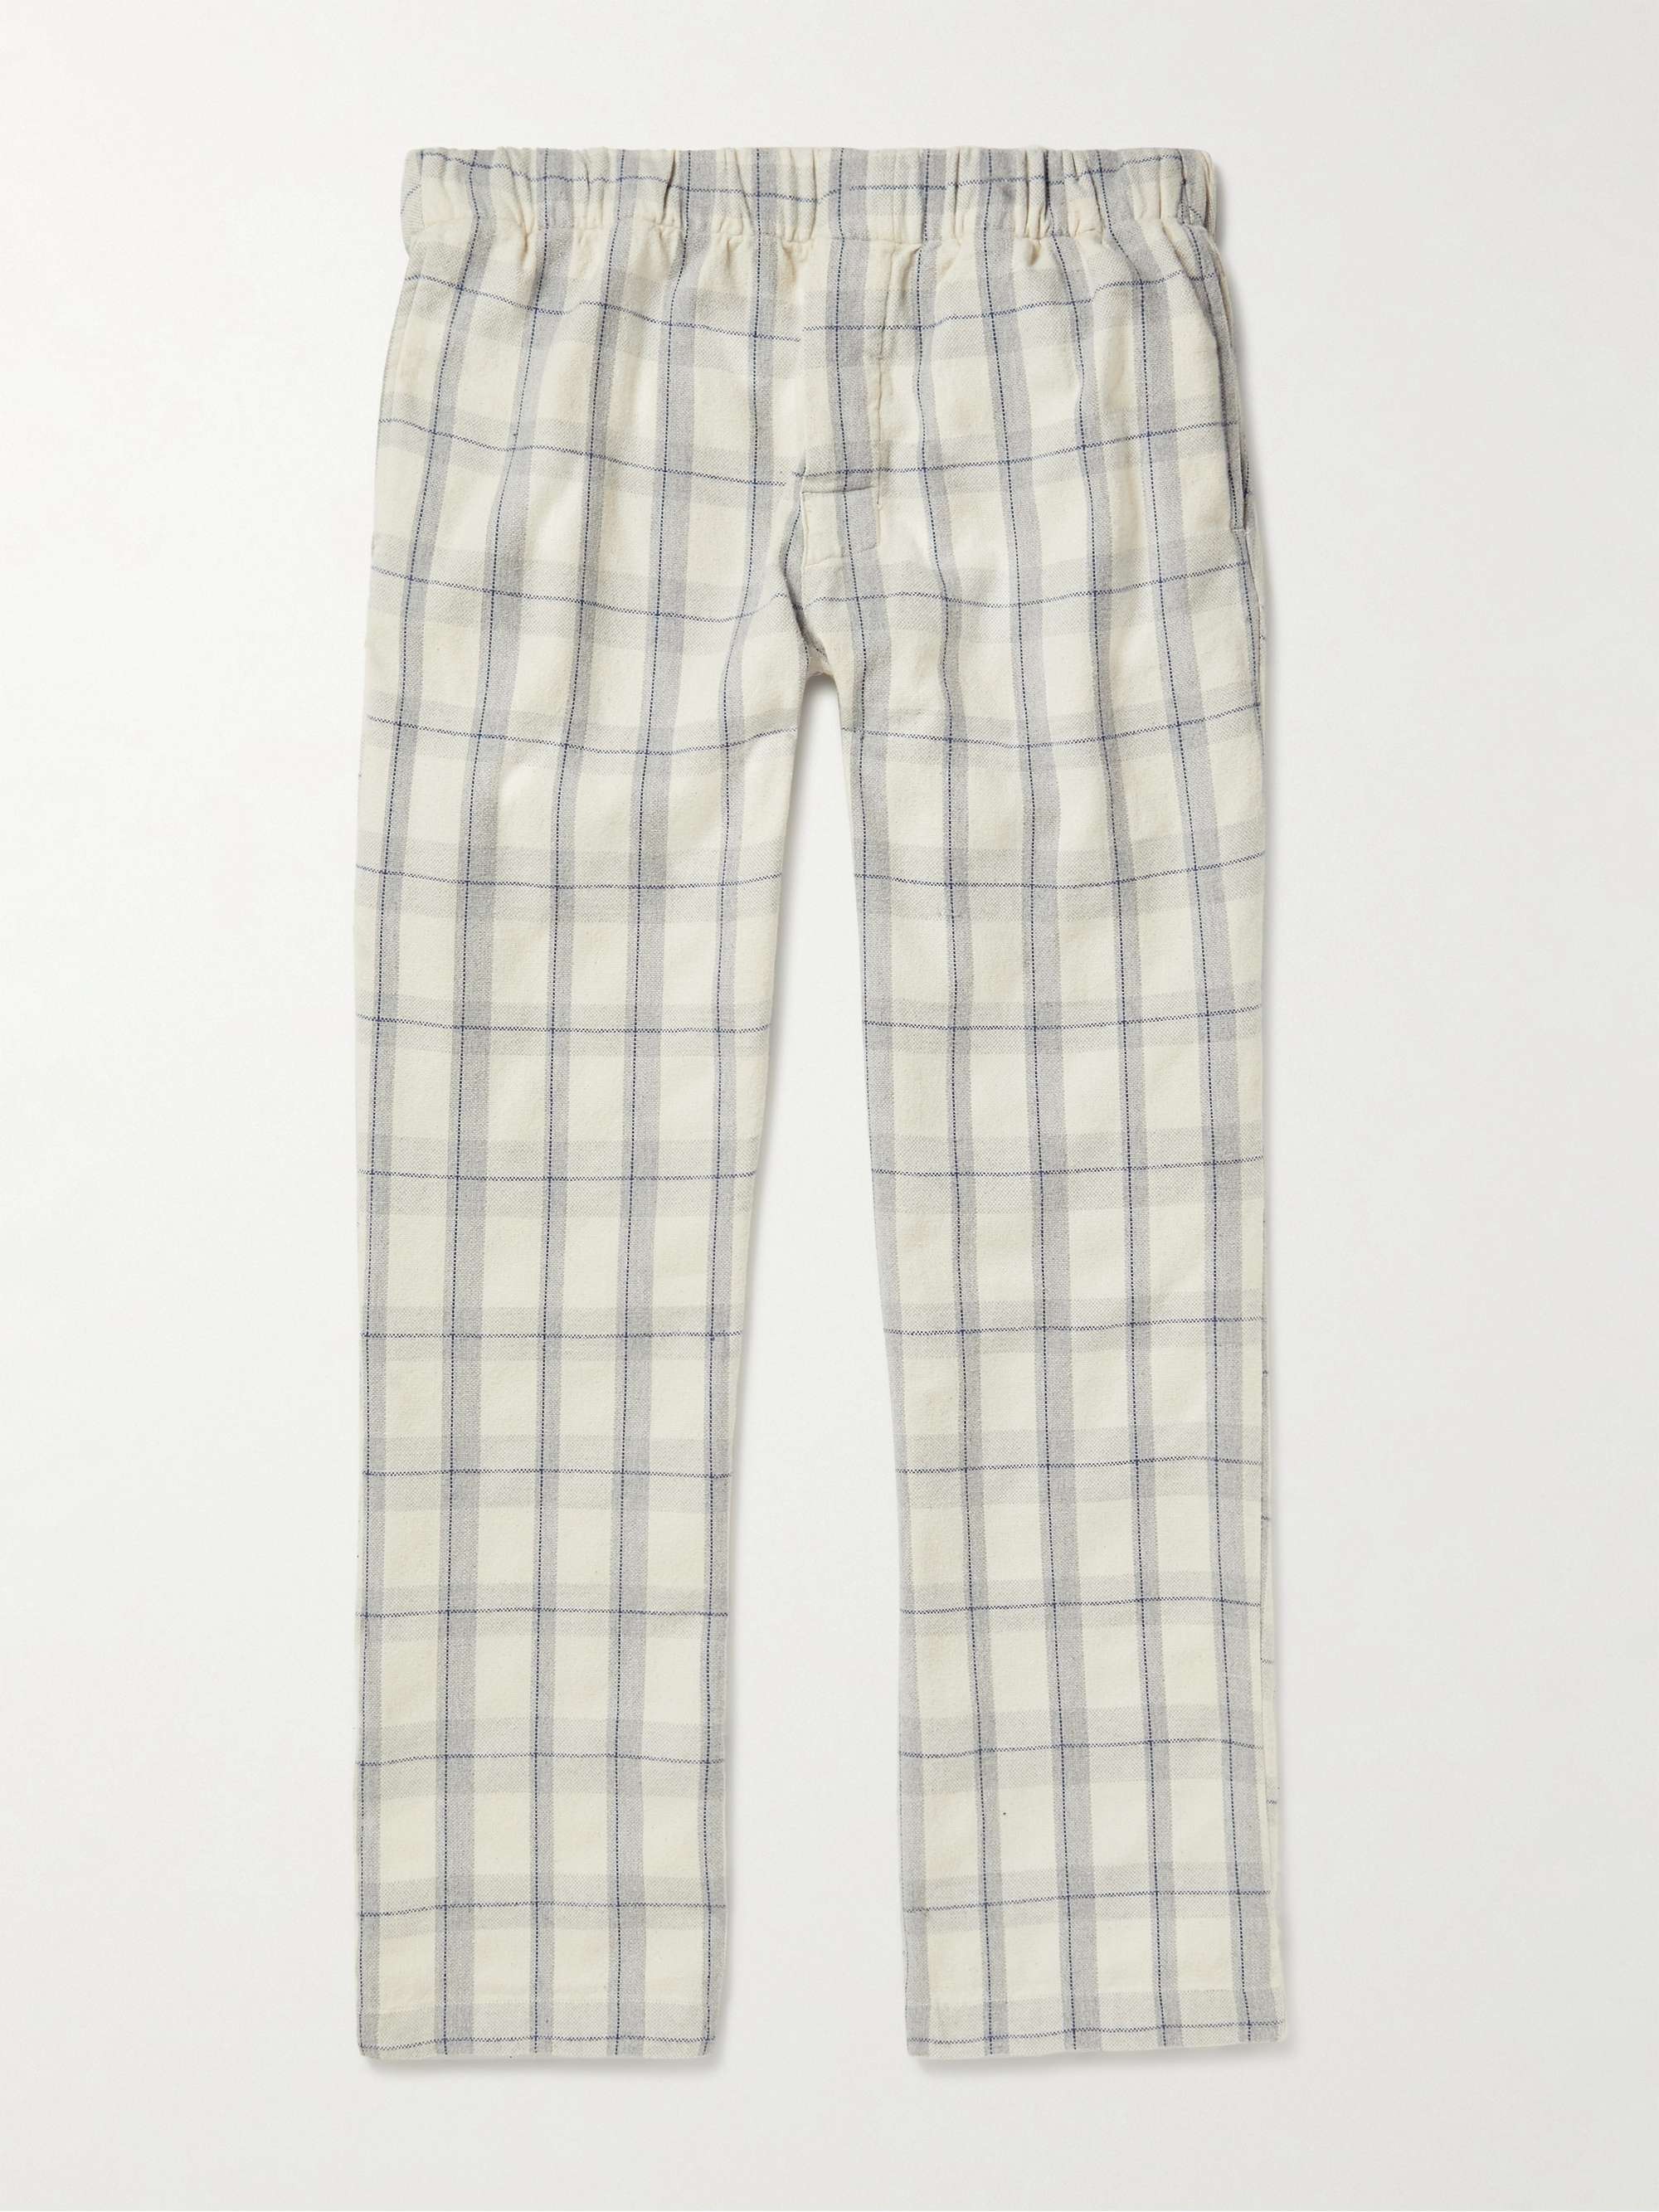 ORIGINAL MADRAS Checked Cotton-Madras Pyjama Trousers